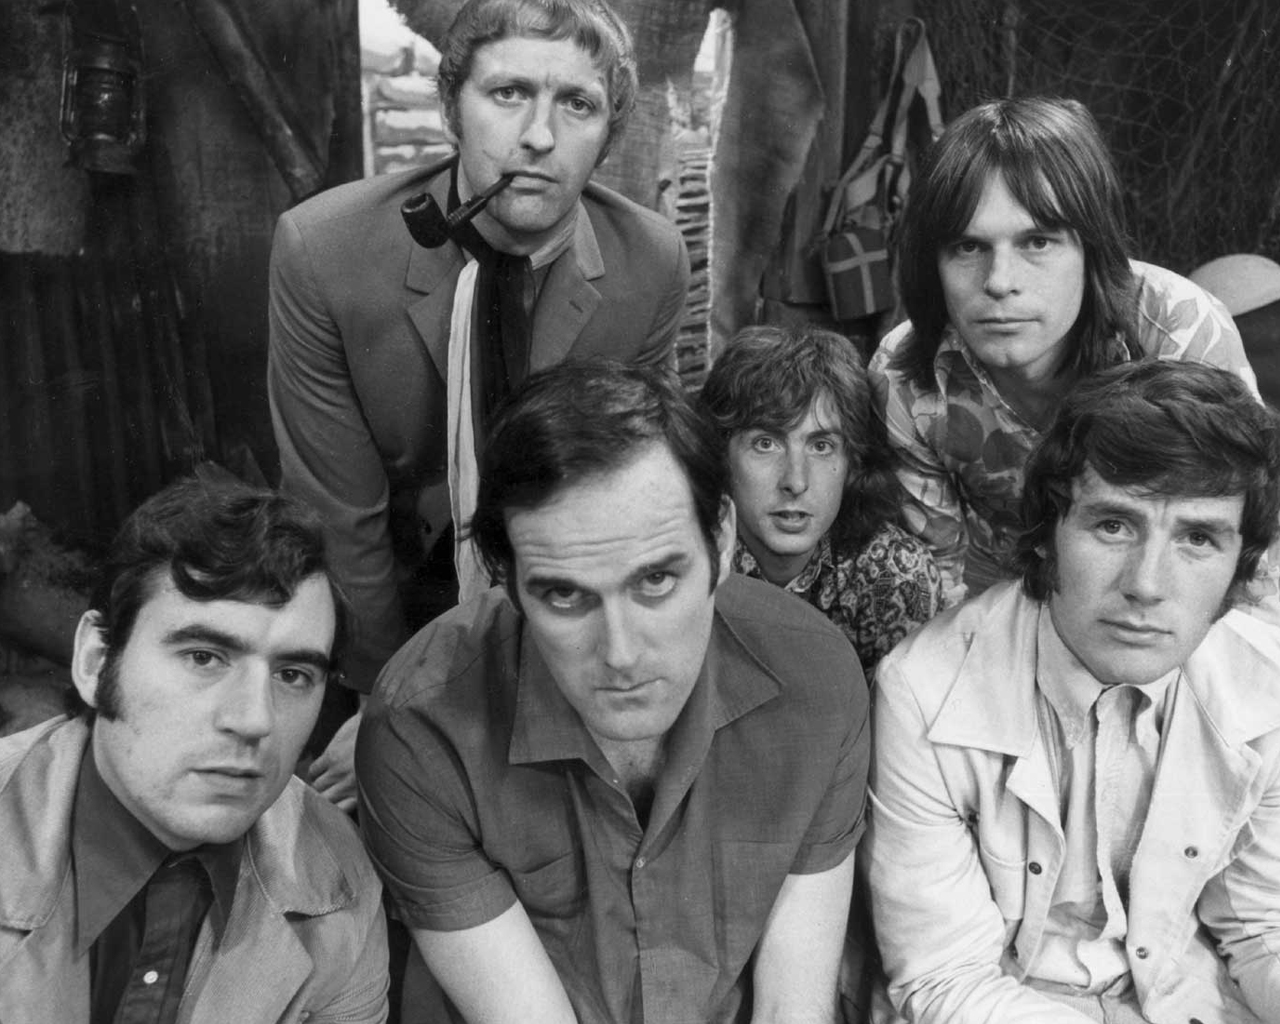 Meilleurs fonds d'écran Monty Python's Flying Circus Absurde N'est Il Pas? pour l'écran du téléphone